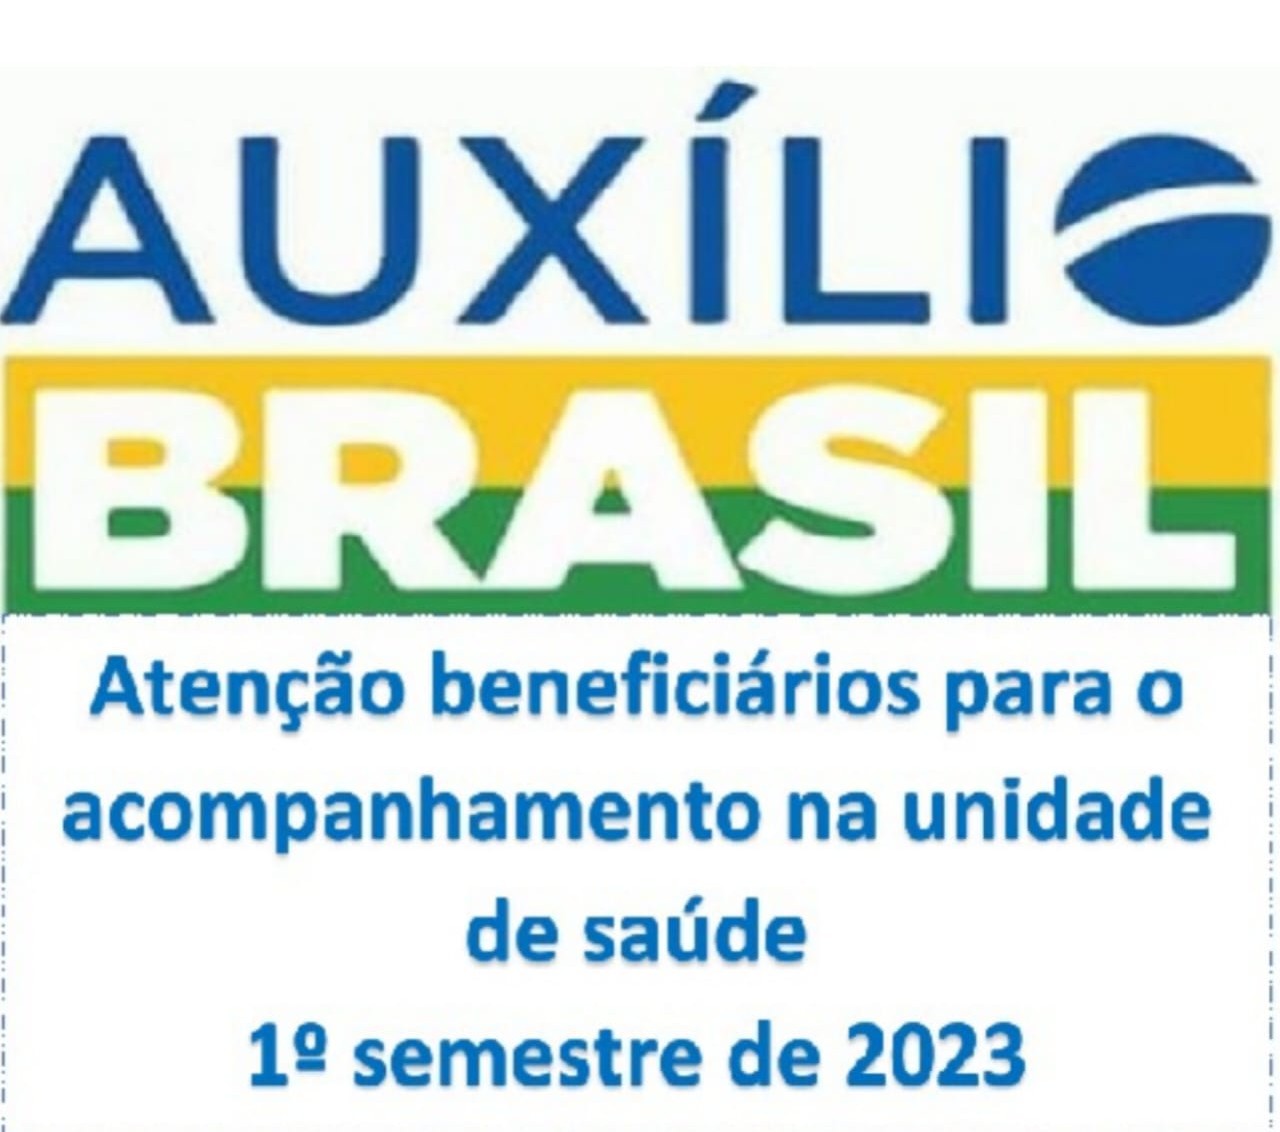 Beneficiários do Auxílio Brasil, devem ficar atentos para o acompanhamento na unidade de saúde, neste 1º semestre de 2023.